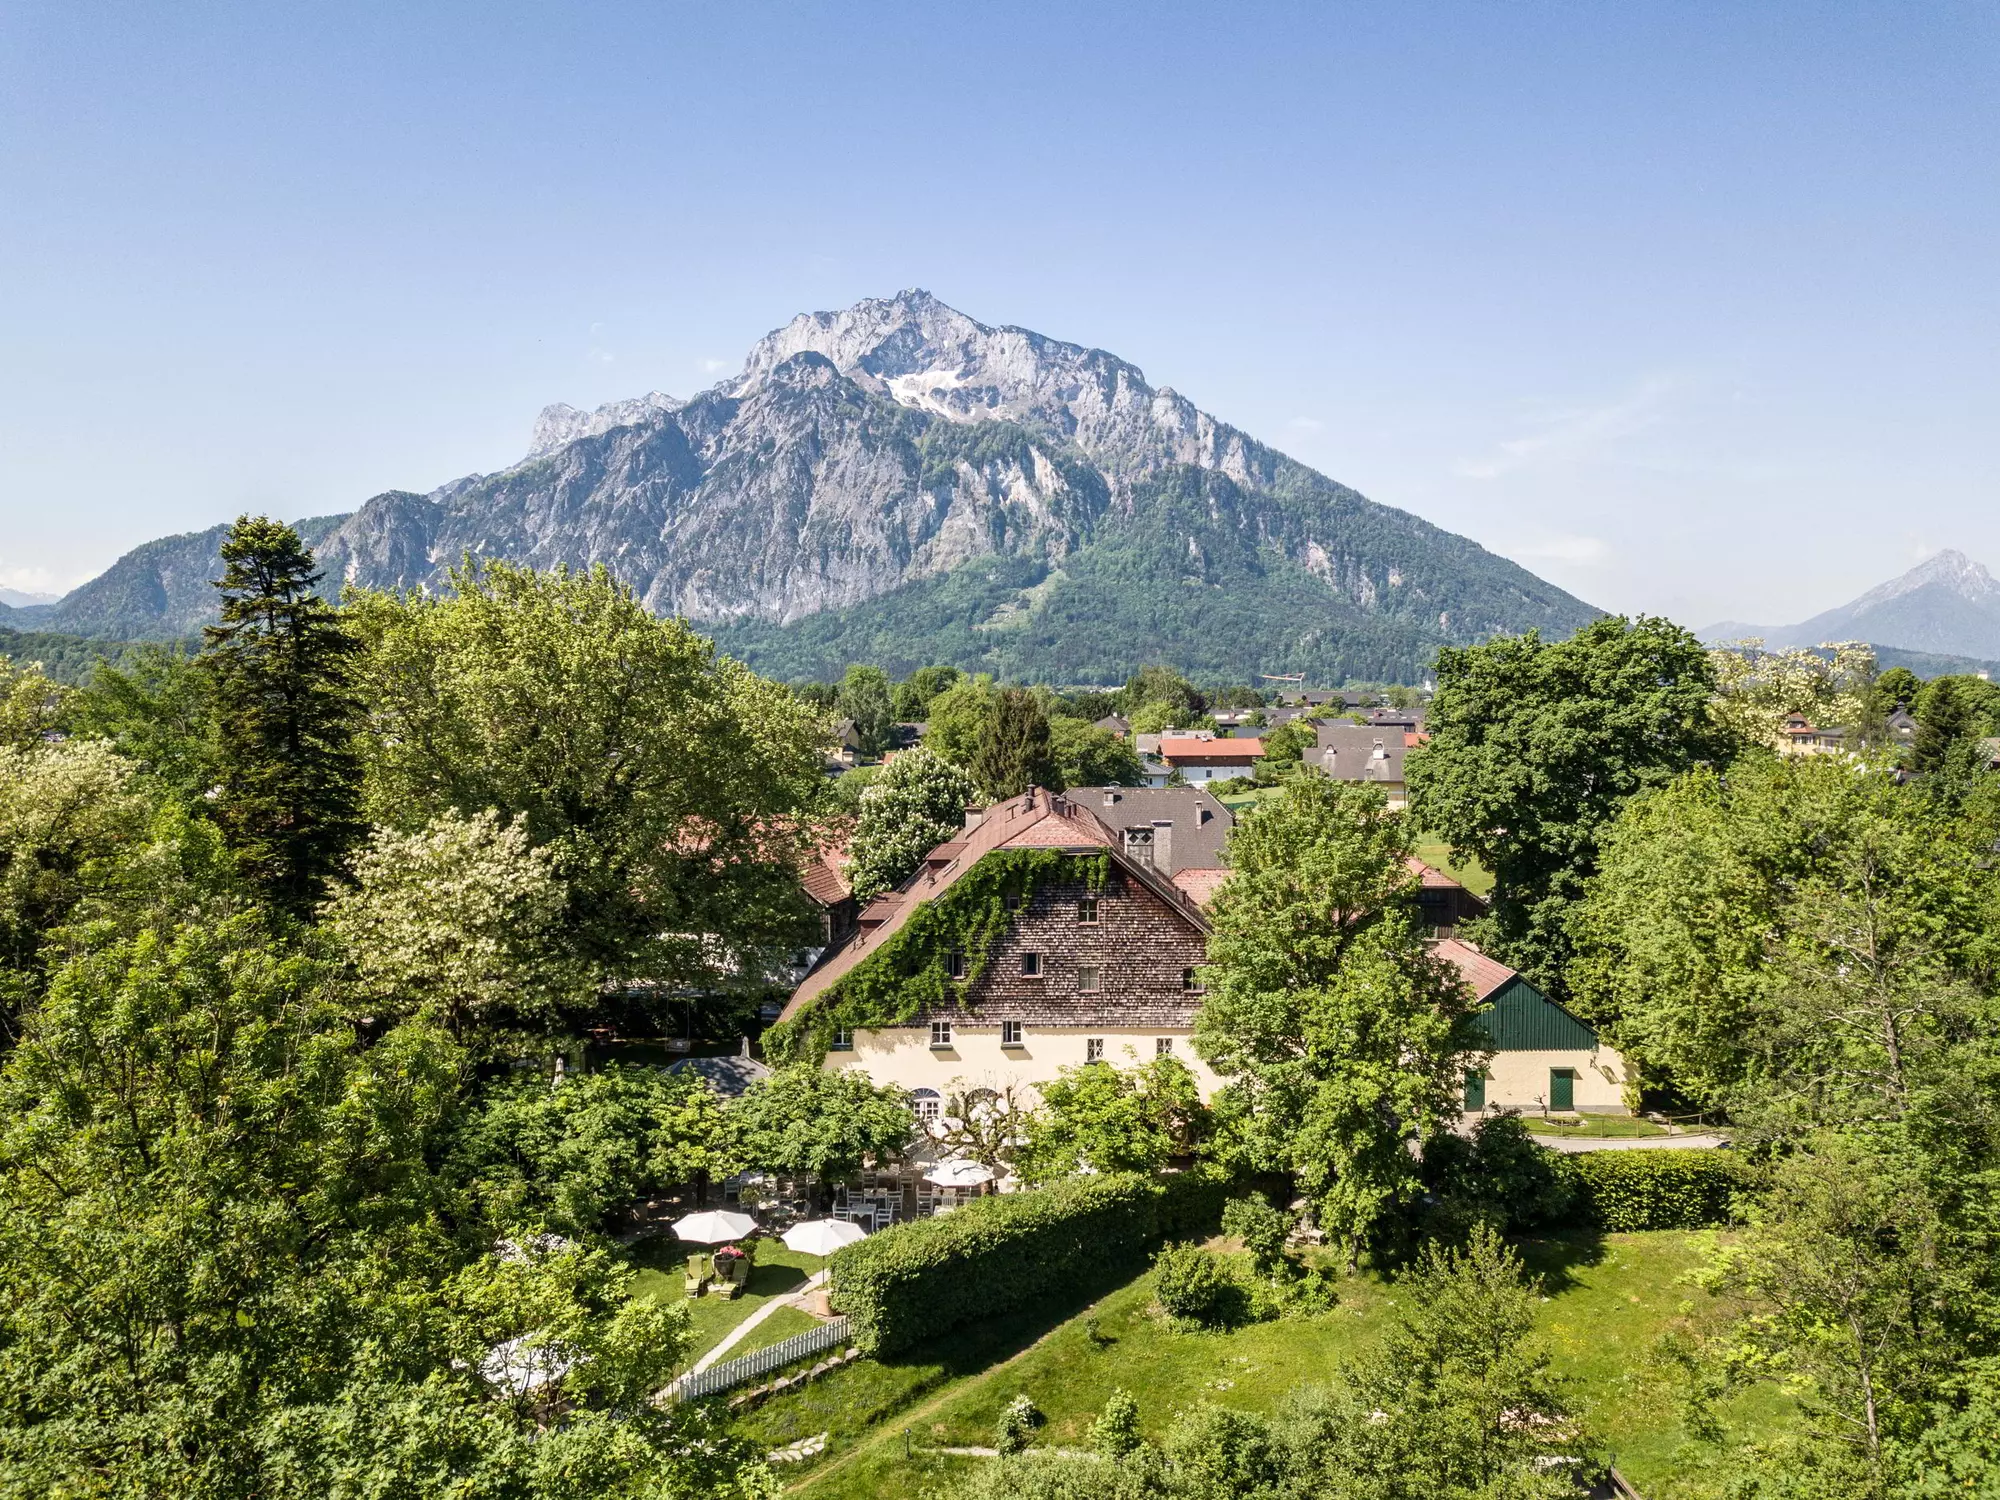 Schlosswirt zu Anif südlich von Salzburg mit dem Untersberg im Hintergrund